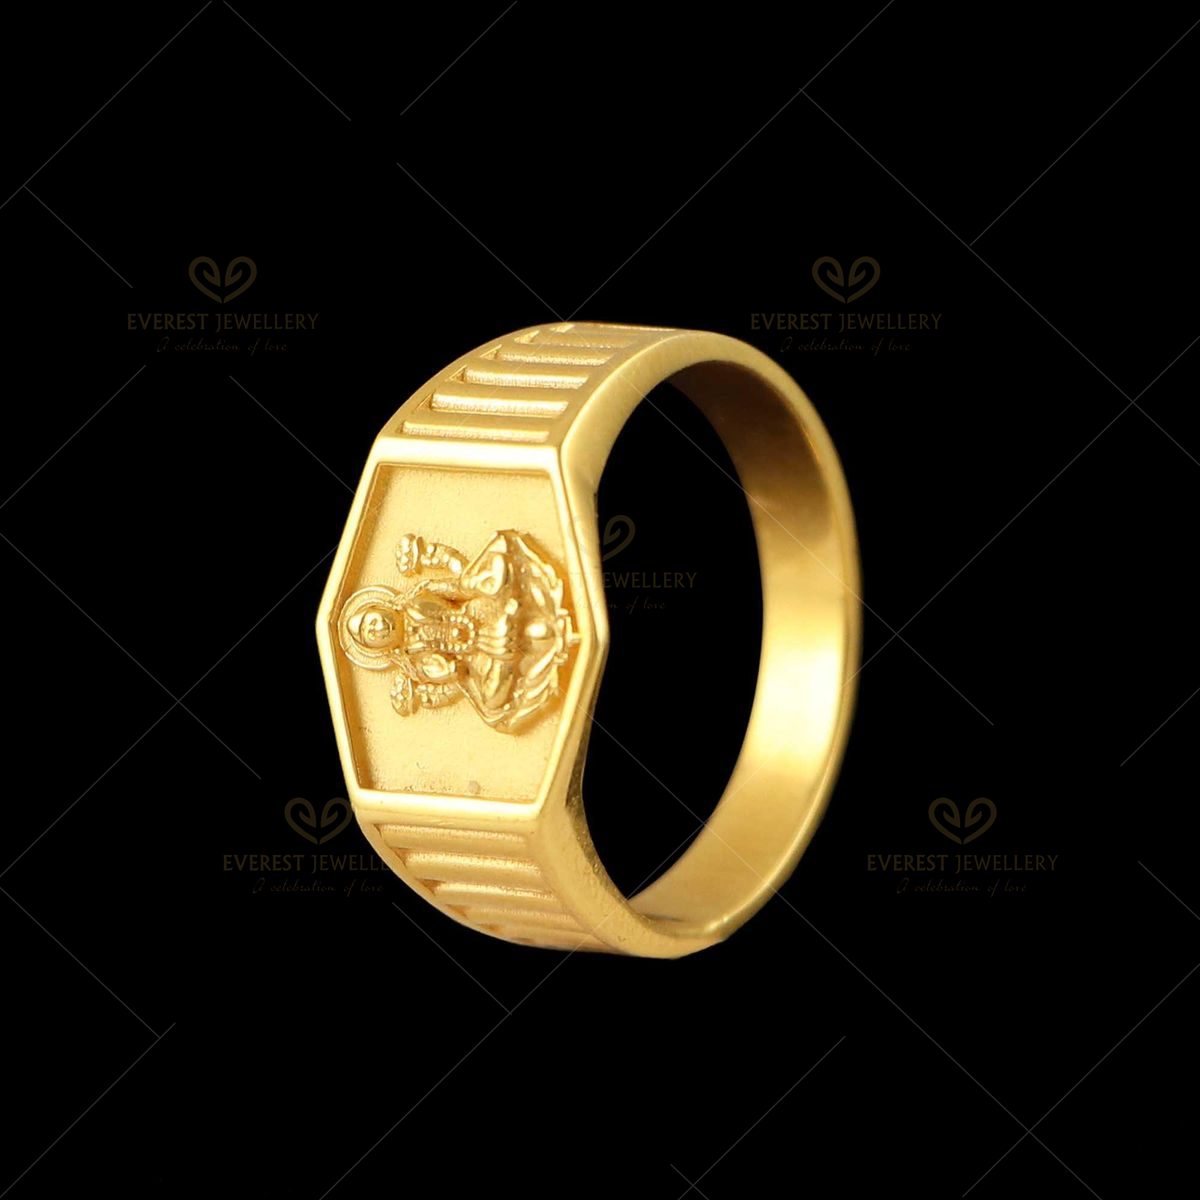 VR 14K Gold Ring w 5 Diamonds 2.2 grams size 4 1/2 | eBay